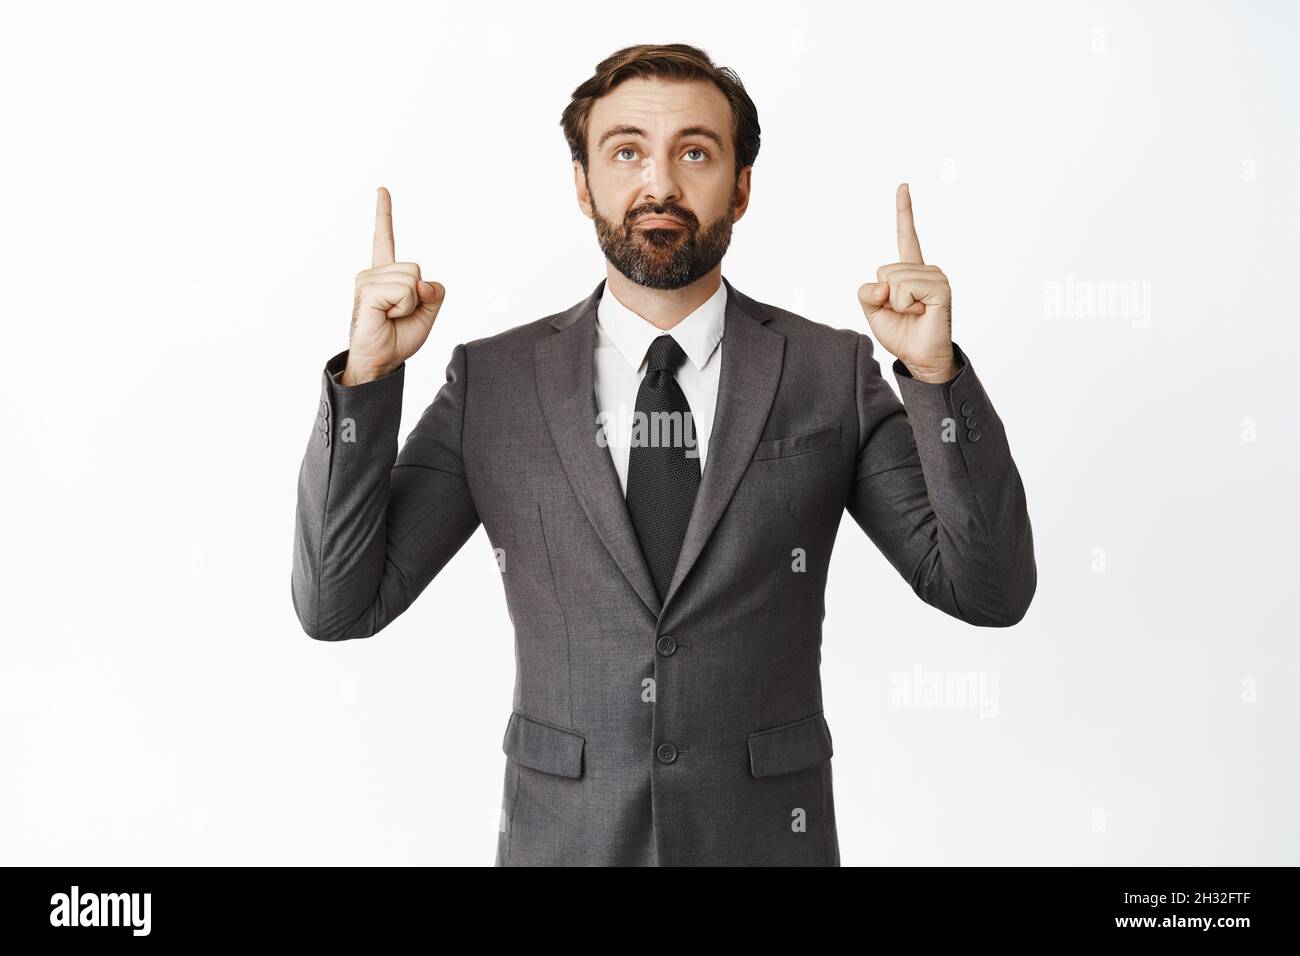 Scettico imprenditore maschio puntando le dita in su e guardando promo offerta, smirk con unamused, deluso volto espressione, in piedi su bianco Foto Stock